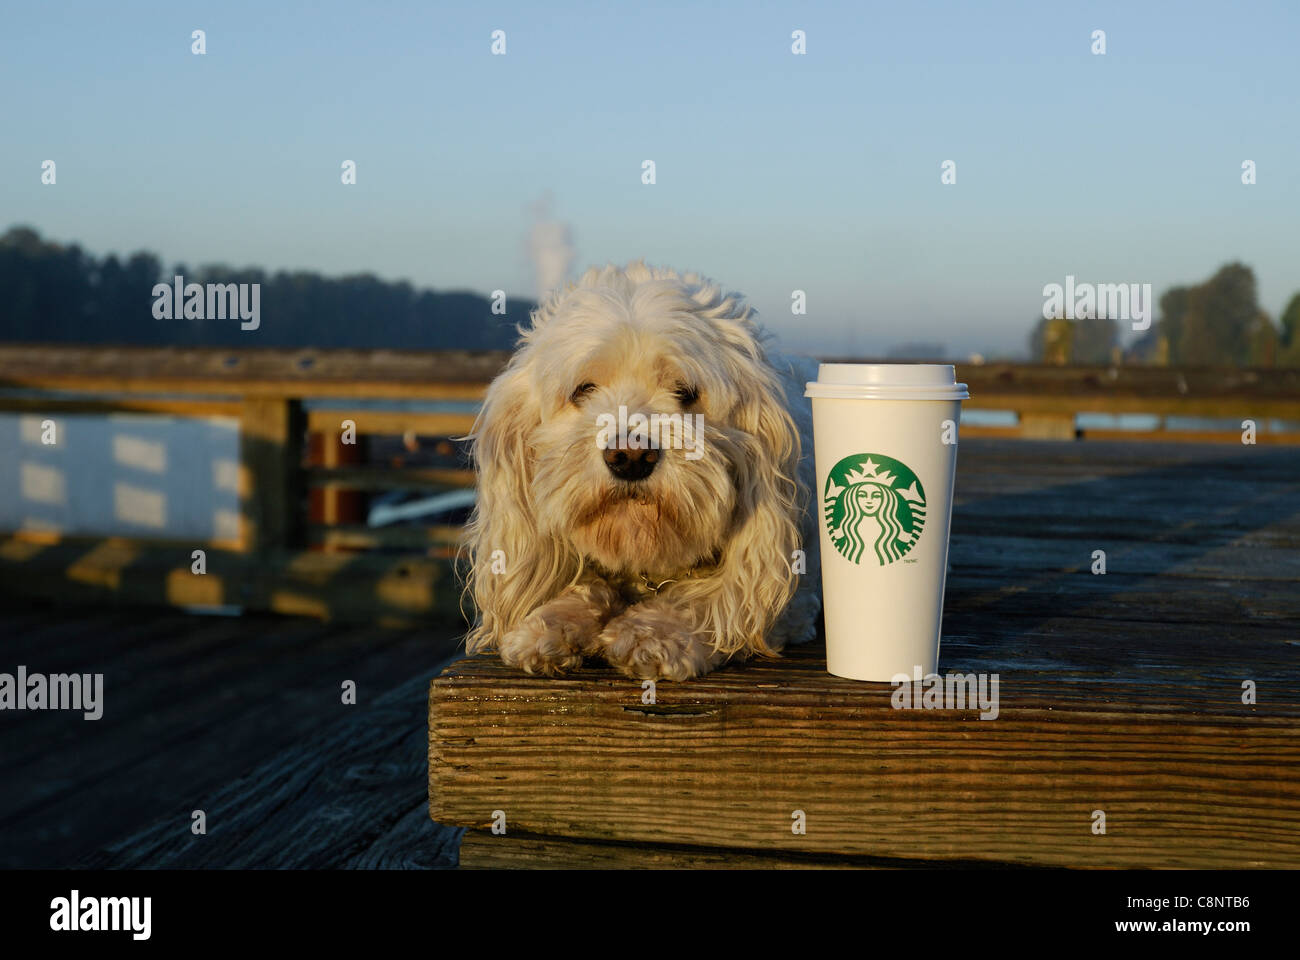 Bichon mutt cercando la fotocamera con un caffè Starbucks accanto a lui. Foto Stock